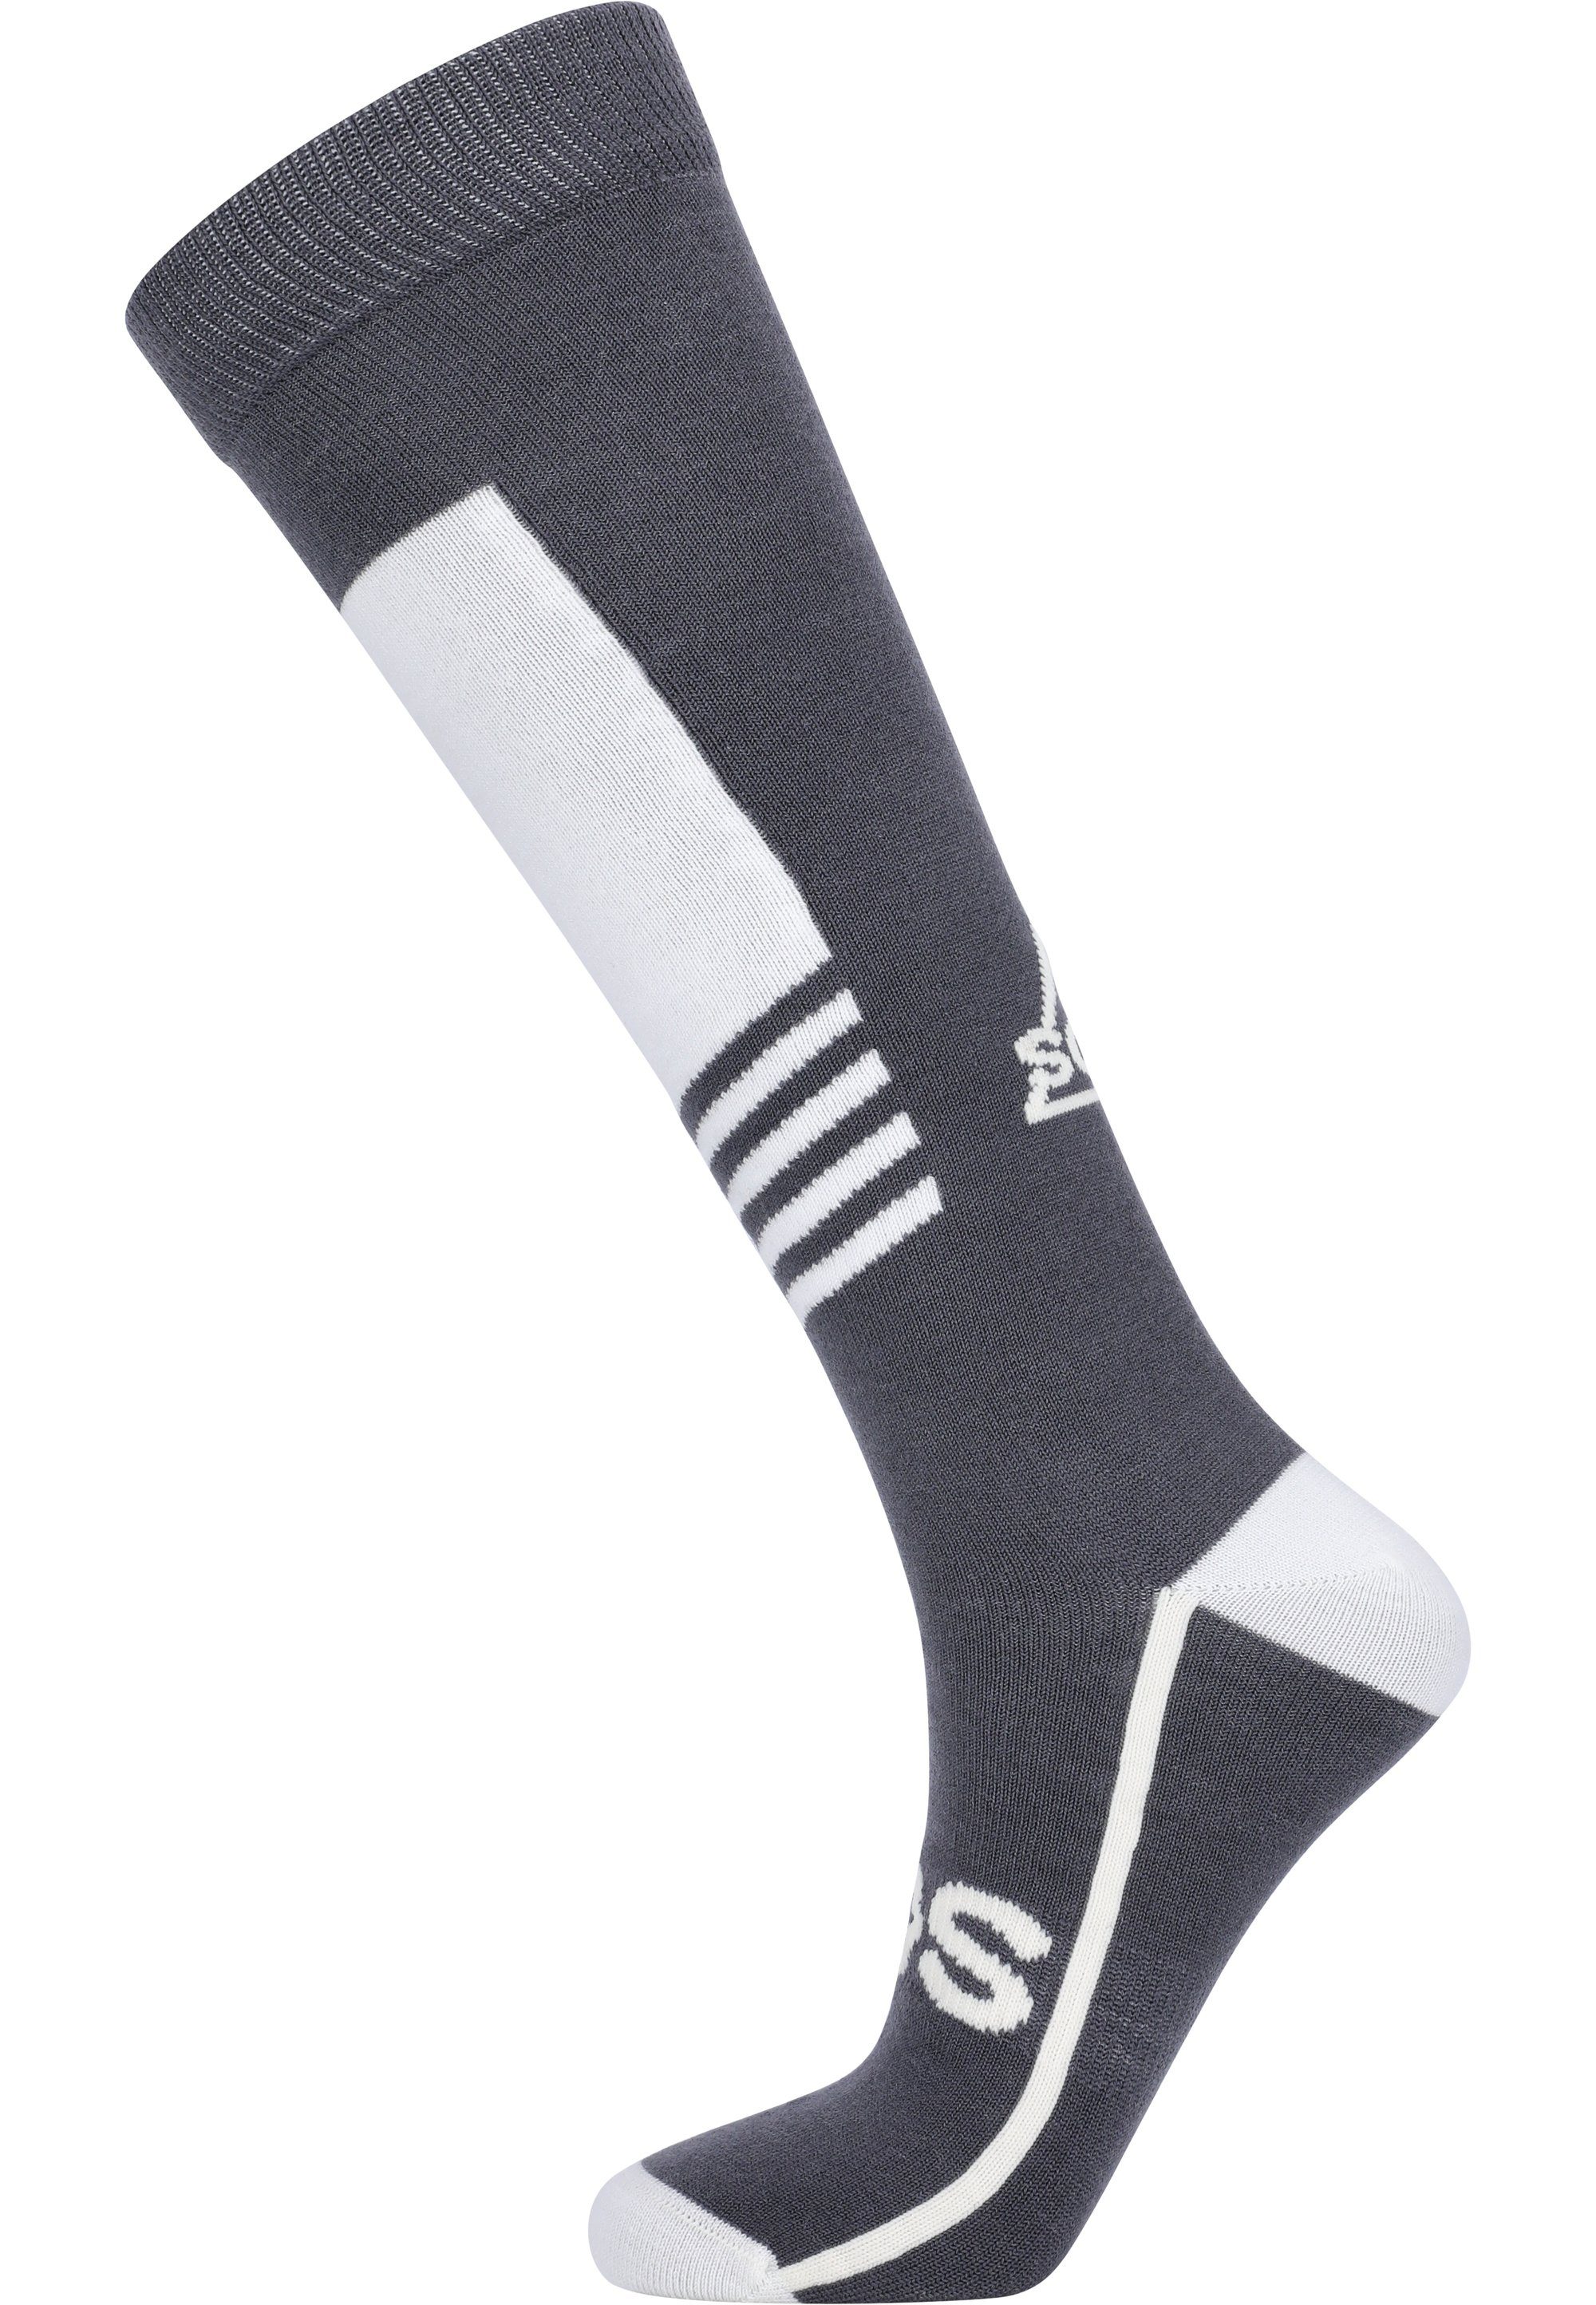 SOS Socken La Hoya mit besonders wärmender Funktion